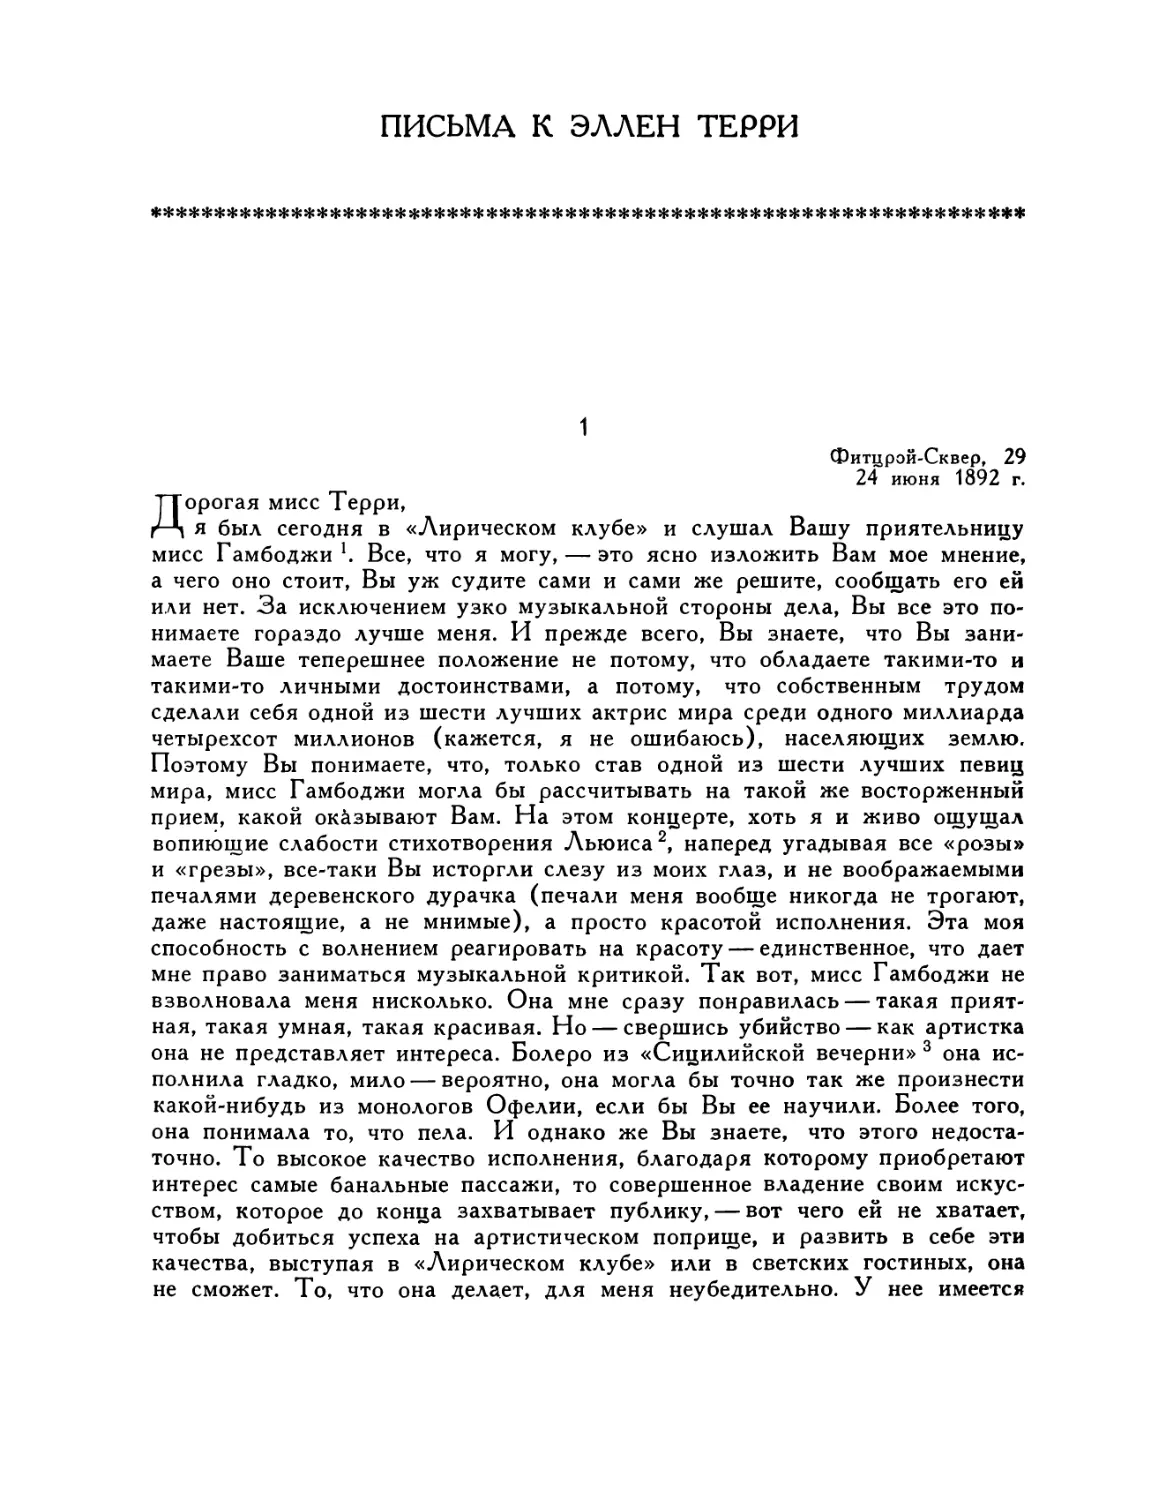 Письма Составление А. Г. Образцовой, перевод И. М. Бернштейн